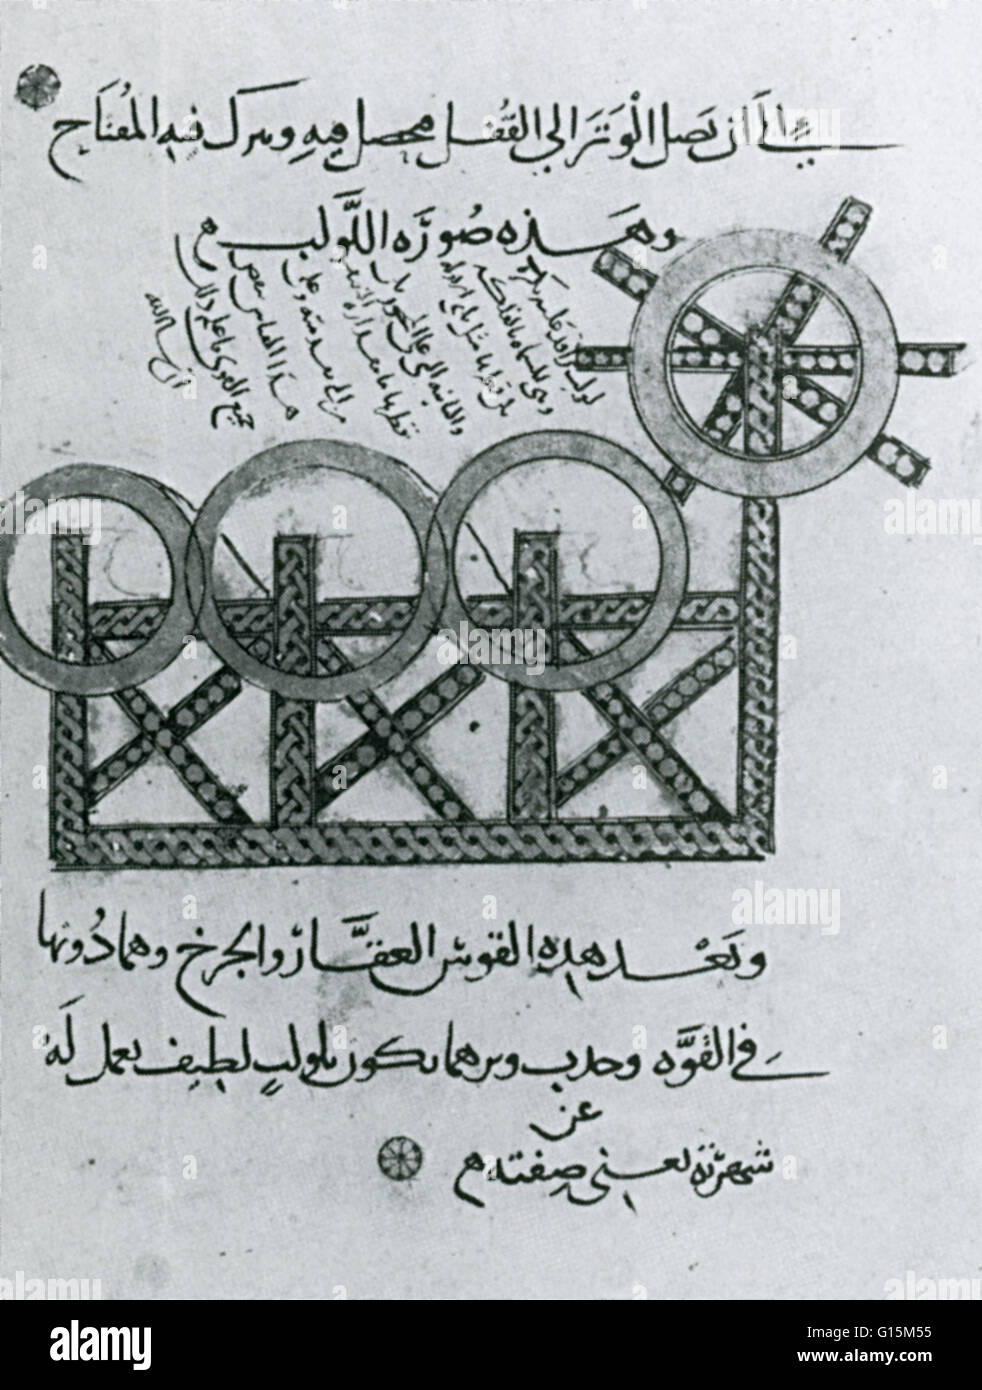 Illustrazione da un trattato compilato fro Saladino dopo la caduta di Gerusalemme. Il triplice arco aveva tre set di corde legate ad una manovella e la ruota che avrebbe bisogno di molti uomini al lavoro. Utilizzato principalmente per la guerra d'assedio. Foto Stock